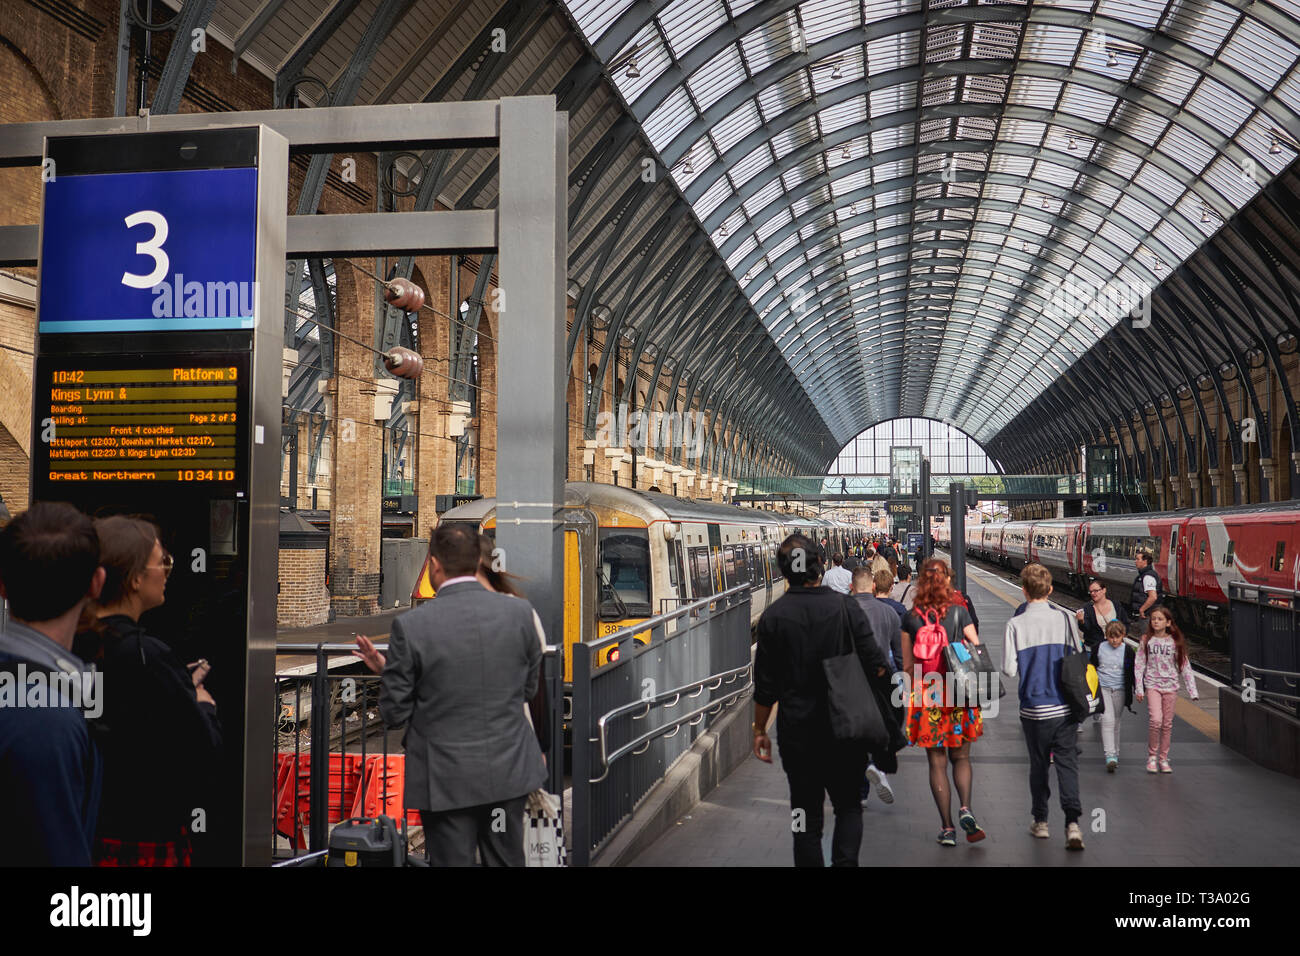 Londres, UK - décembre 2018. Les touristes et les navetteurs de la gare de King's Cross, l'un des plus fréquentés dans les gares ferroviaires de Londres. Banque D'Images